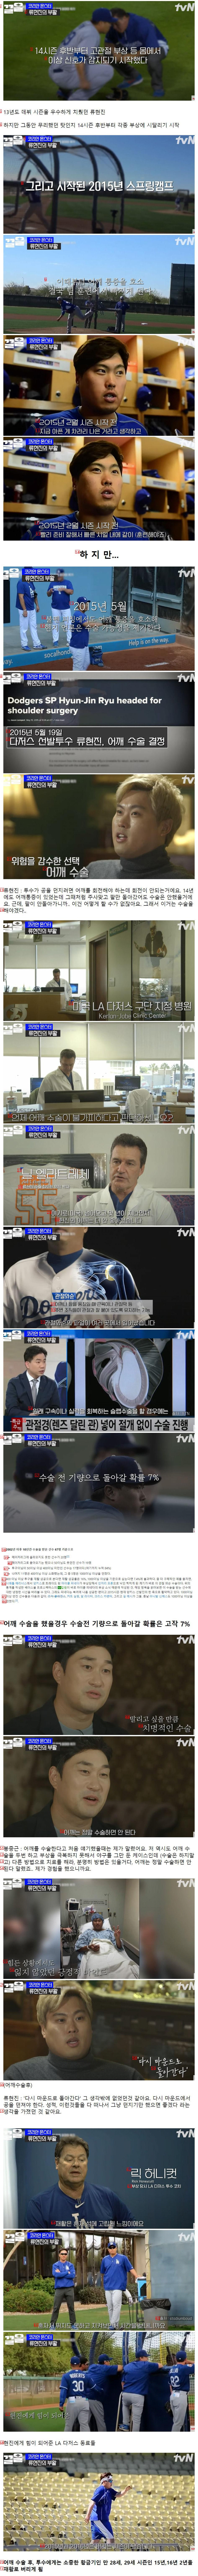 류현진의 야구 인생이 끝날뻔 했던 시간